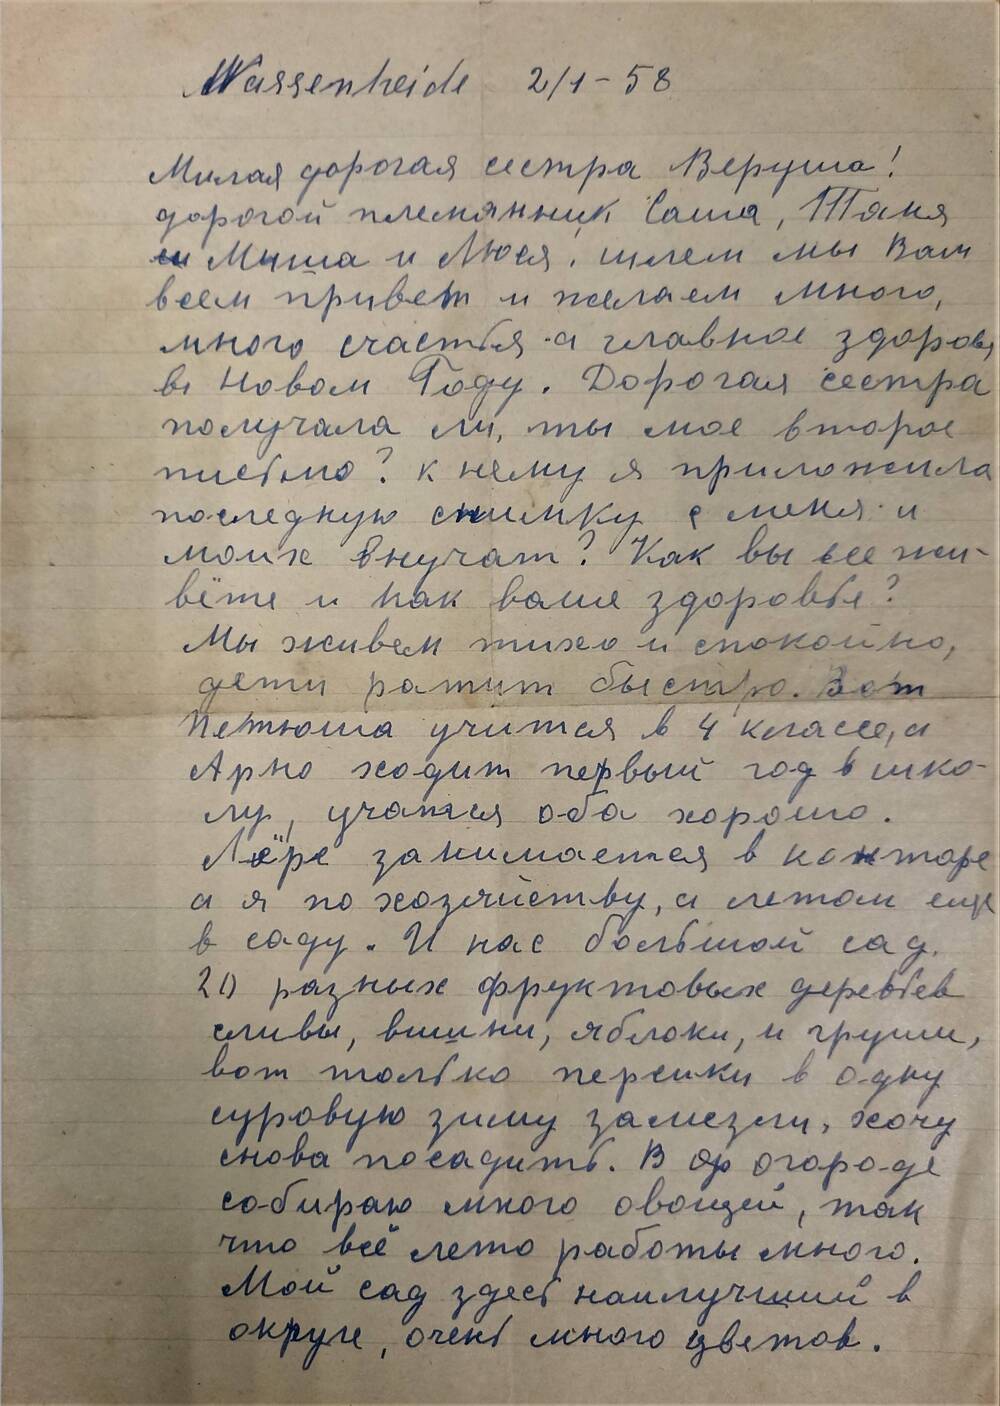 Письмо Вере Цимбаревич от сестры Анны из Германии.02.01.1958 год, Германия, г. Вассенхайд.